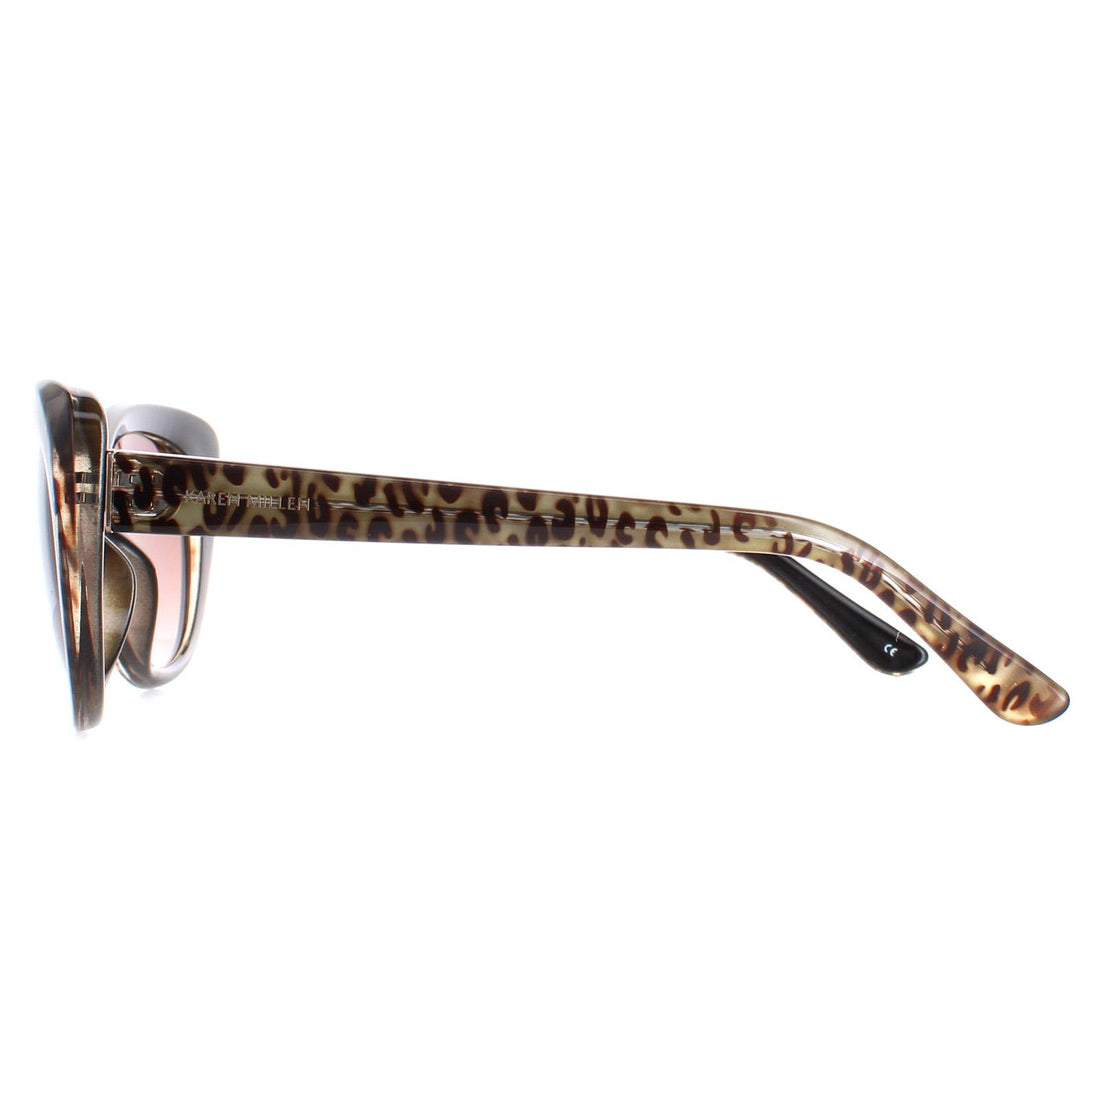 Karen Millen Sunglasses KM5024 115 Leopard Brown Gradient